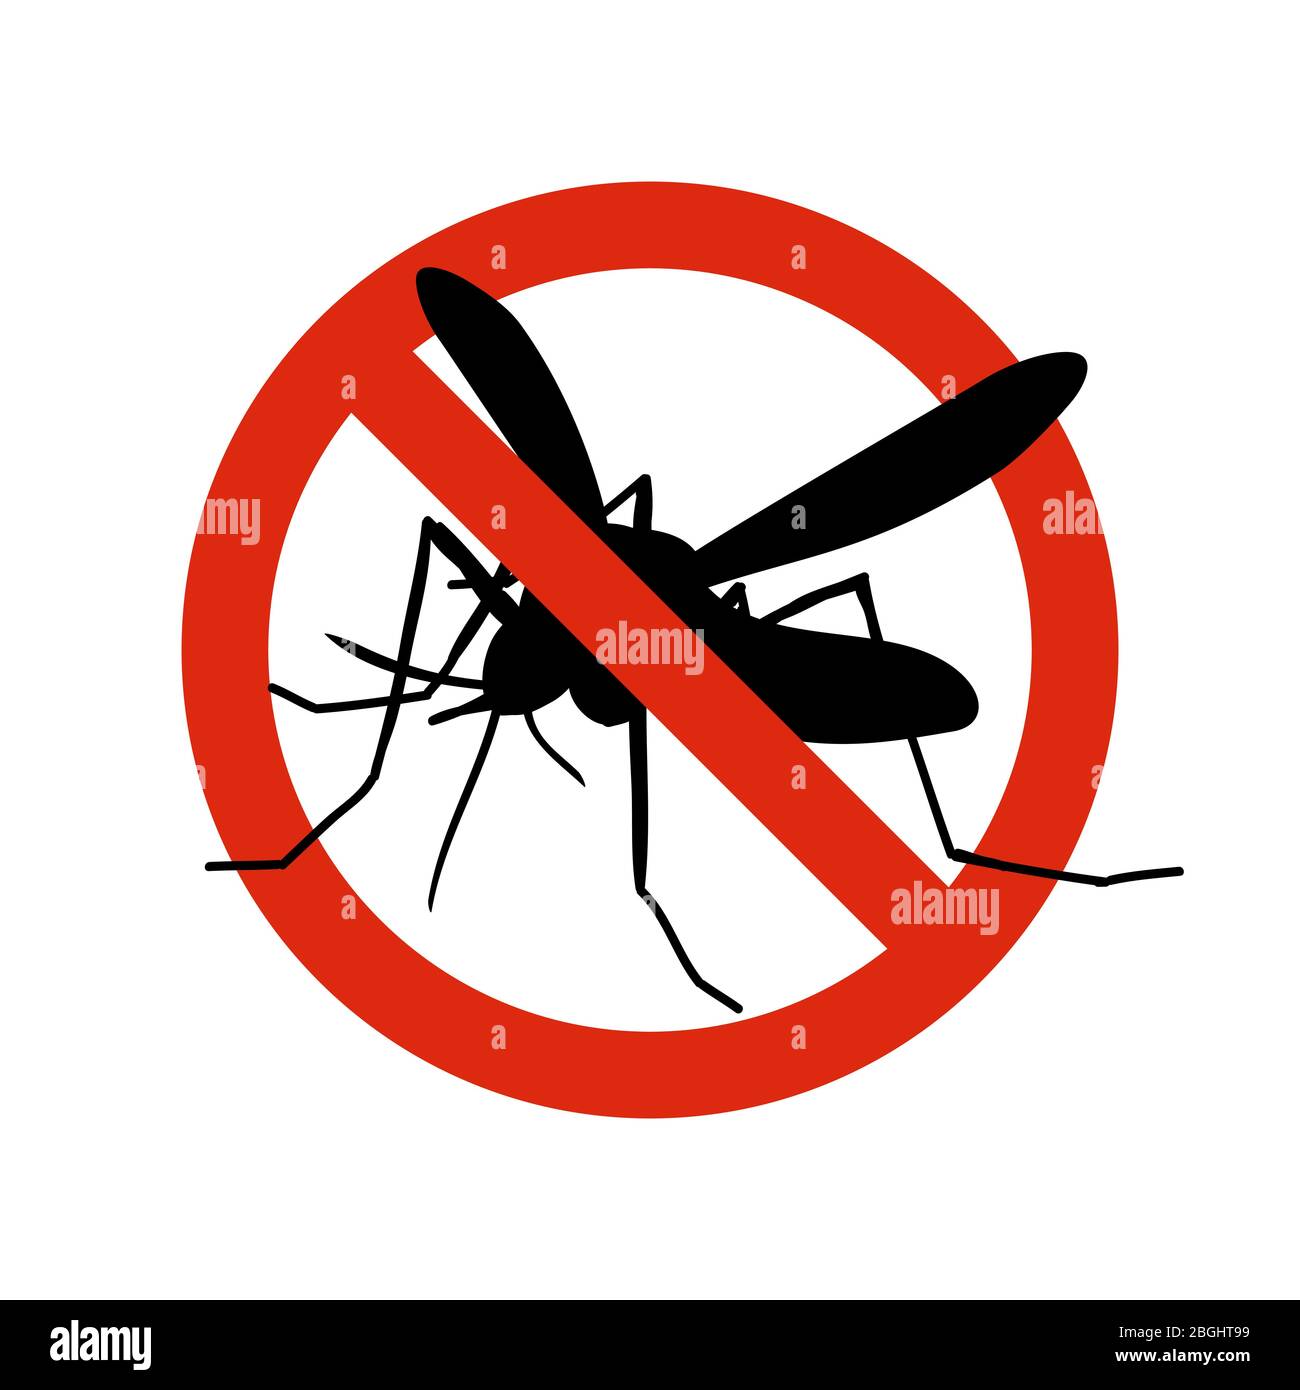 Moskito Warnung verboten Schild. Anti-Mücken, Insektenkontrolle Vektor-Symbol. Stop und Kontrolle Moskito, Anti-Insekt-Illustration Stock Vektor